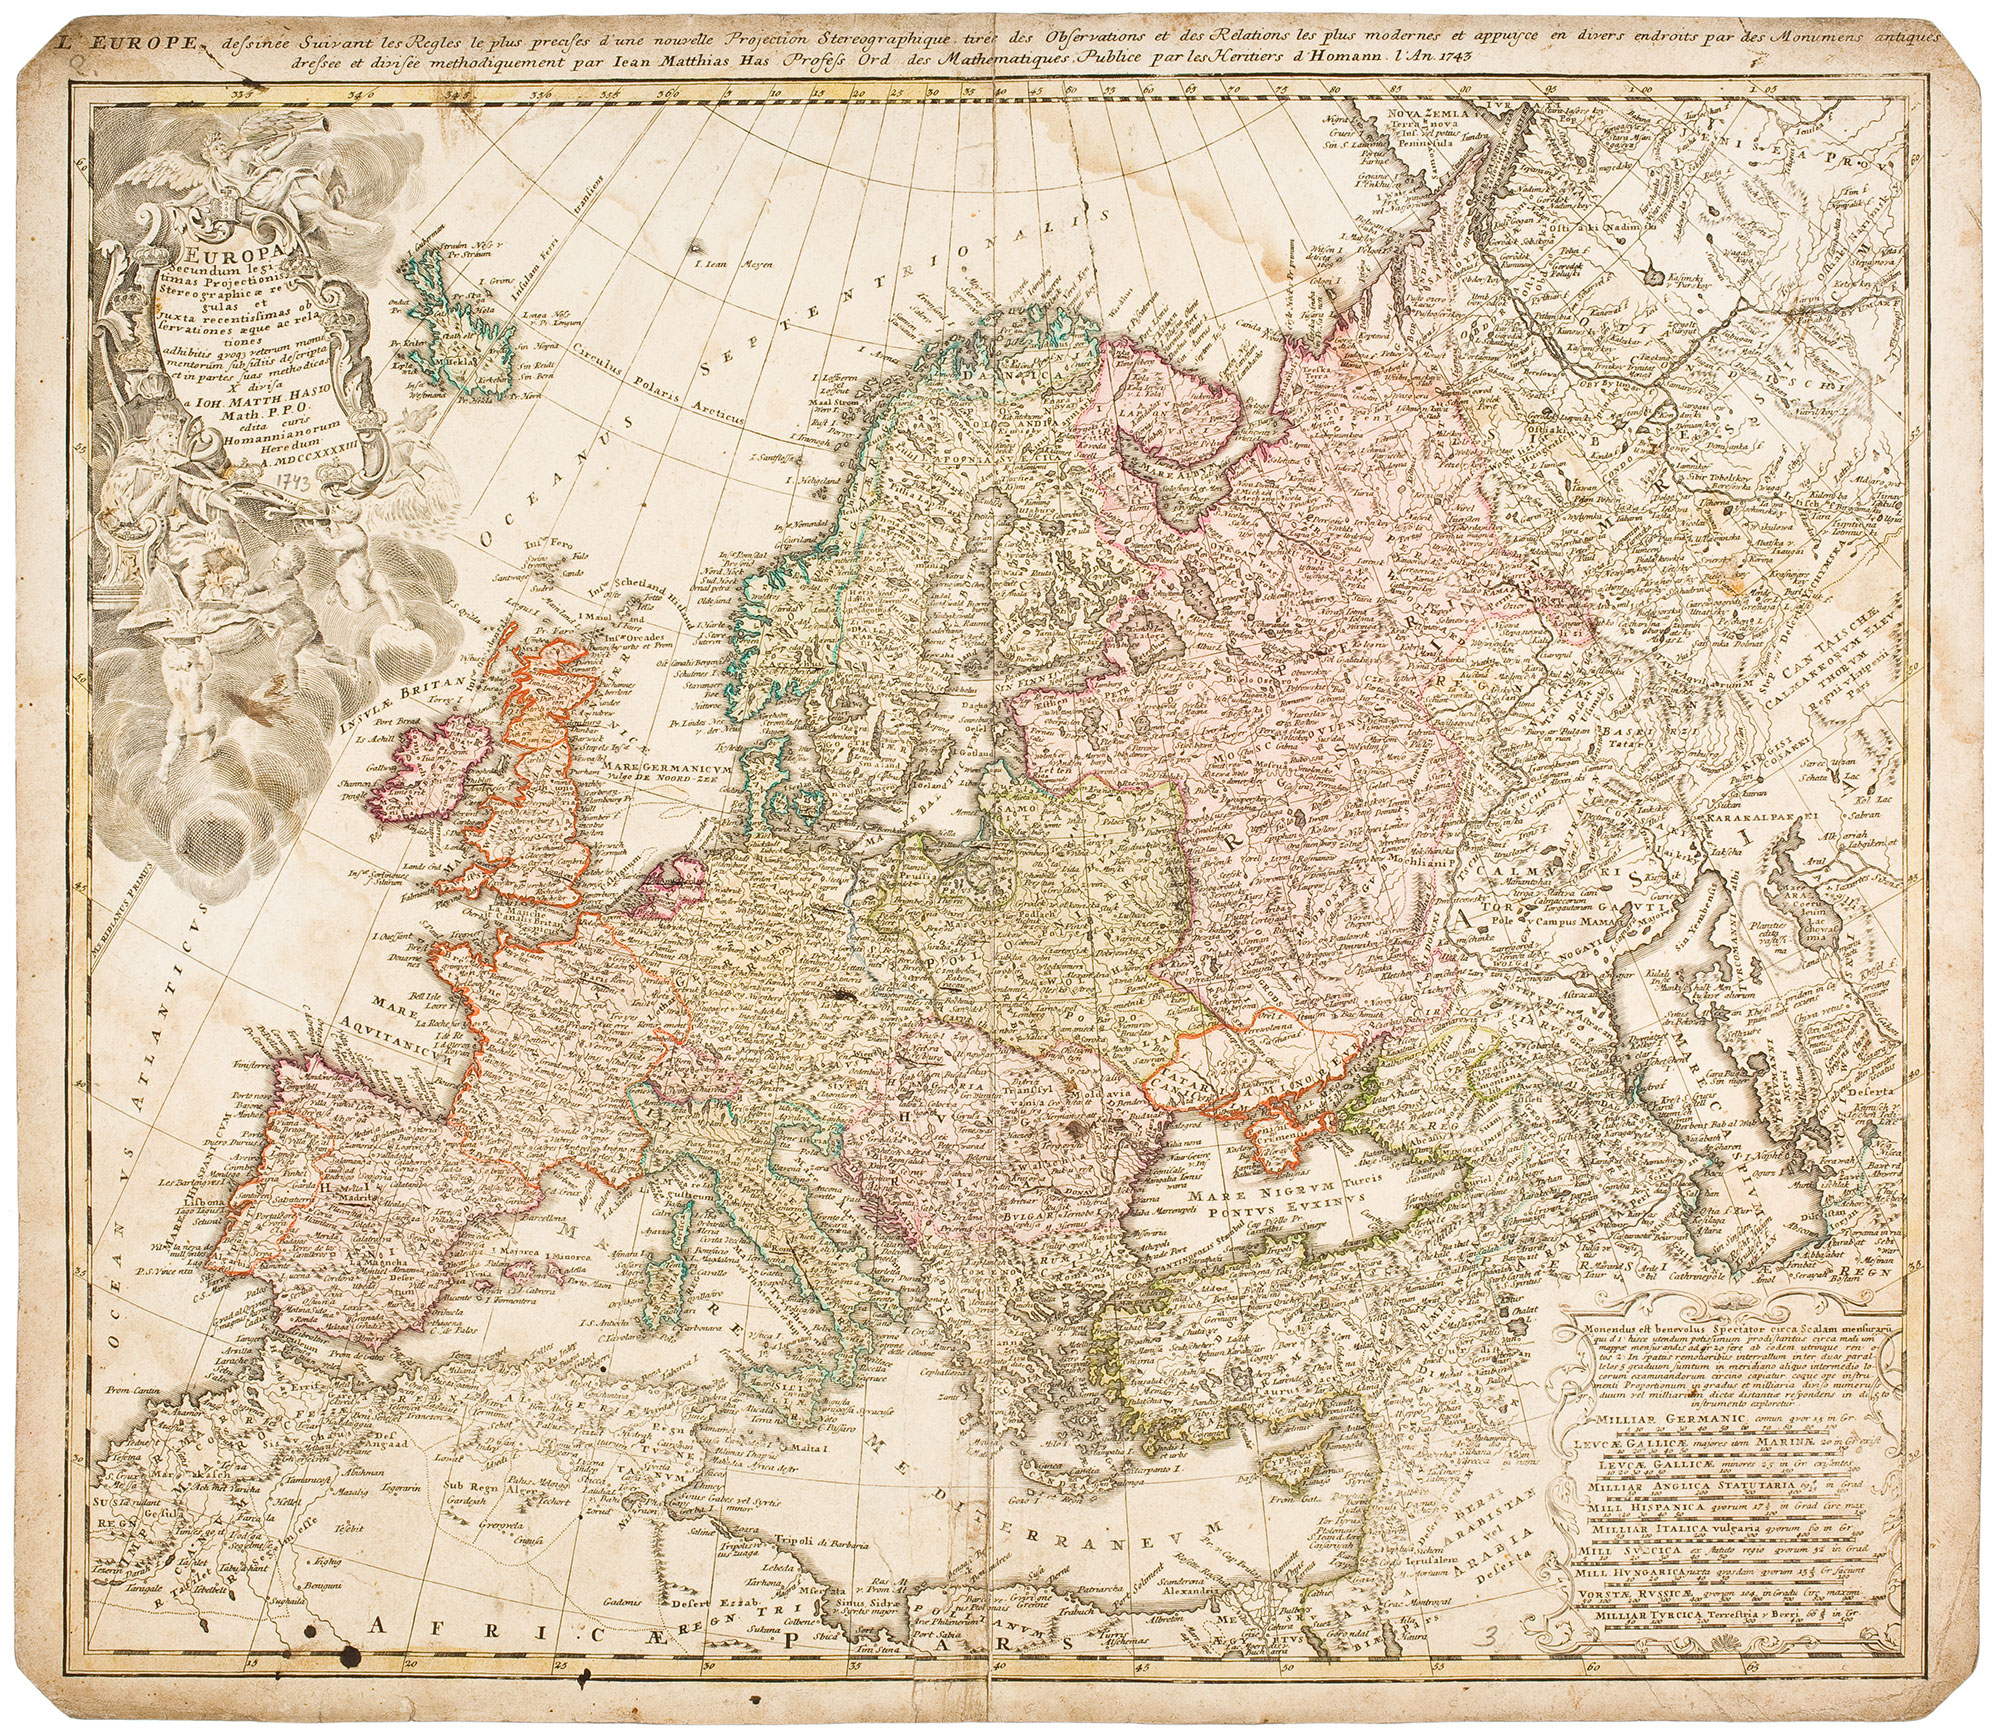 Europa. Homannische Erben, Norymberga 1743. Fot. Arkadiusz Podstawka